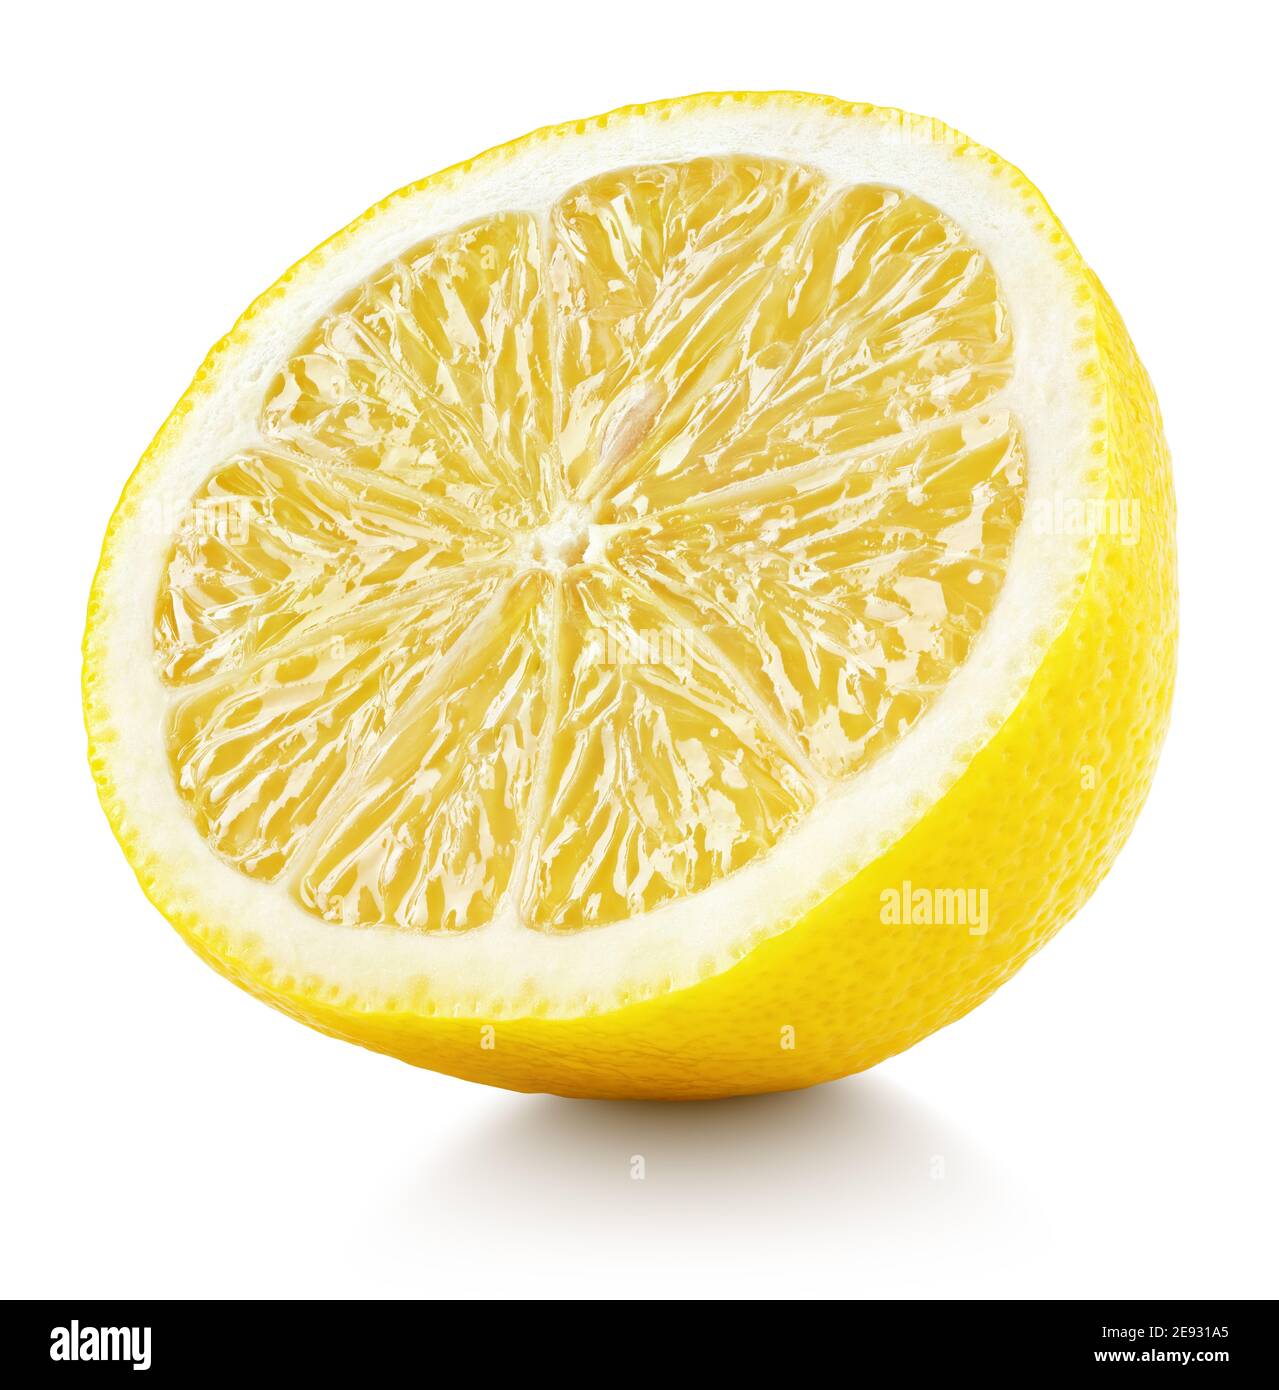 Metà del limone isolato su sfondo bianco. Limone giallo agrumi con percorso di ritaglio. Profondità di campo completa. Foto Stock